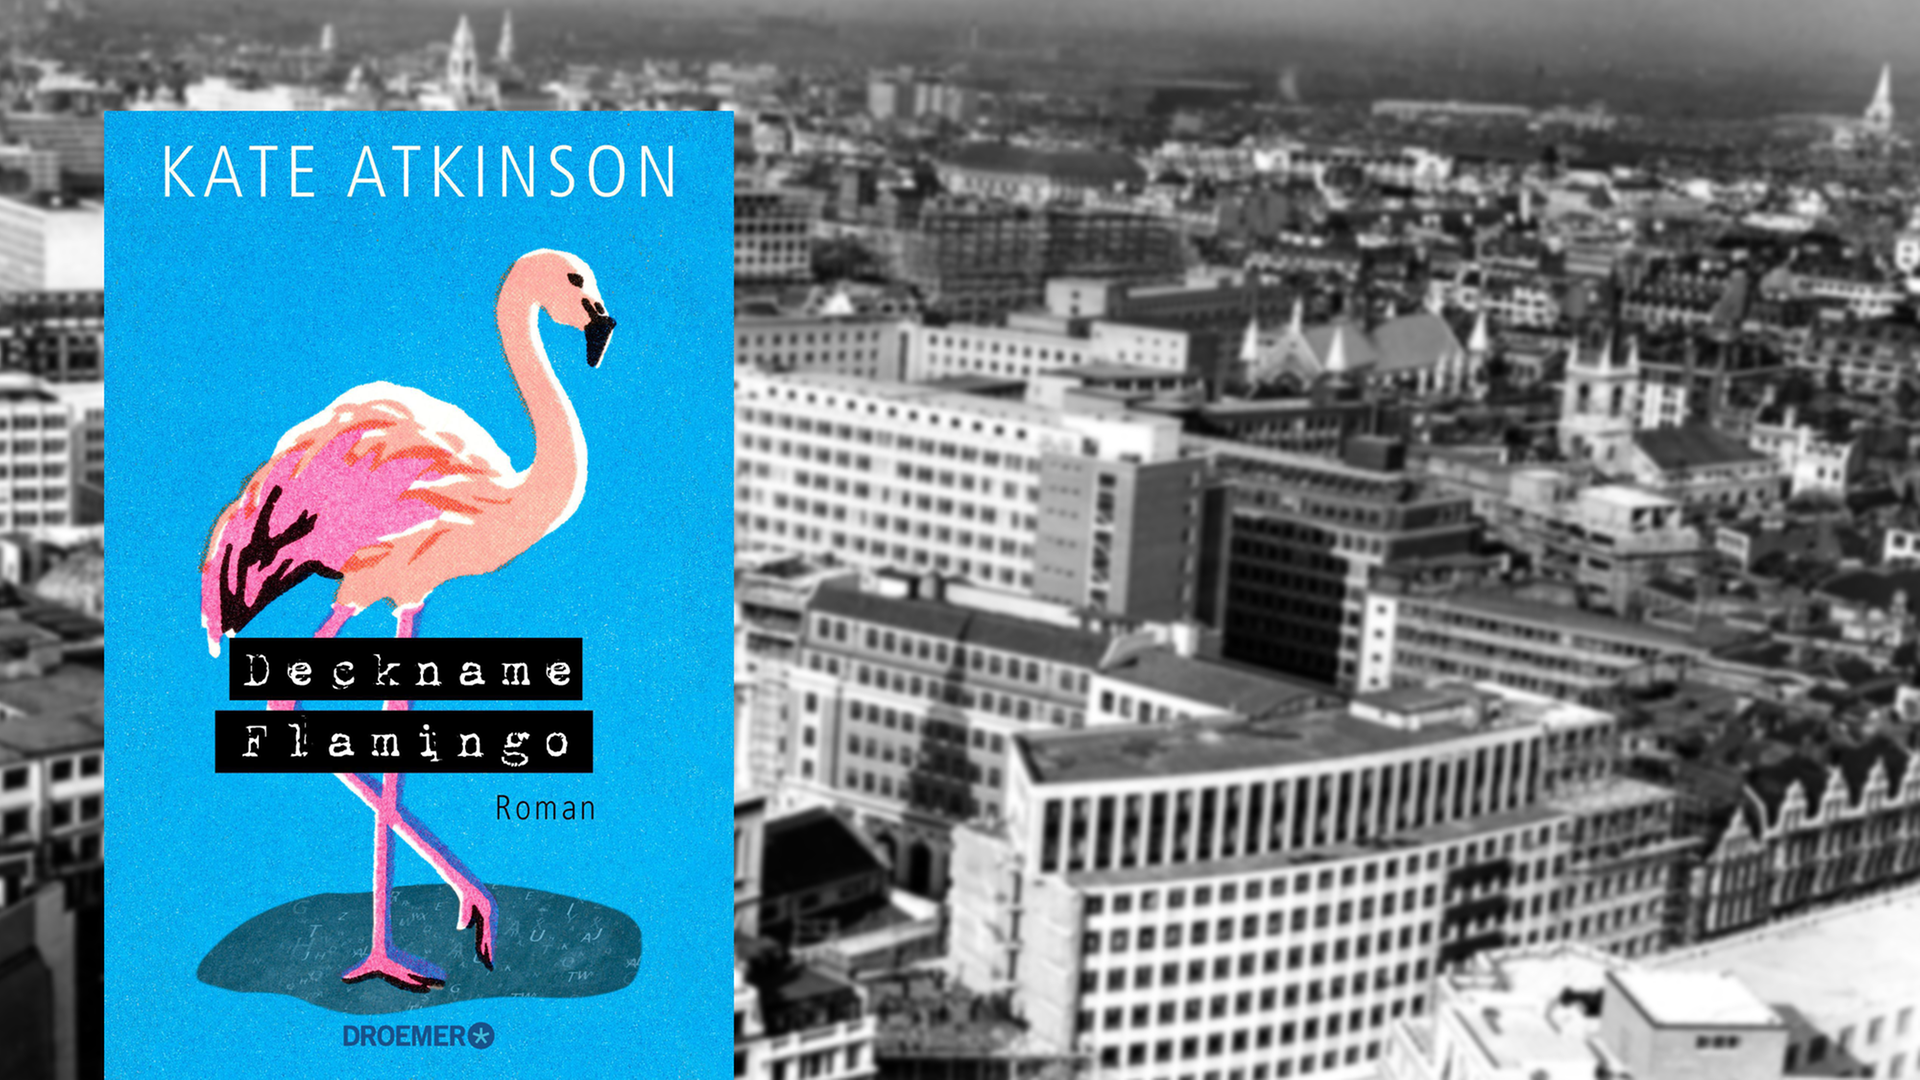 Im Vordergrund ist das Cover des Krimis "Deckname Flamingo". Im Hintergrund eine schwarzweiß Aufnahme Londons aus dem Jahre 1959.